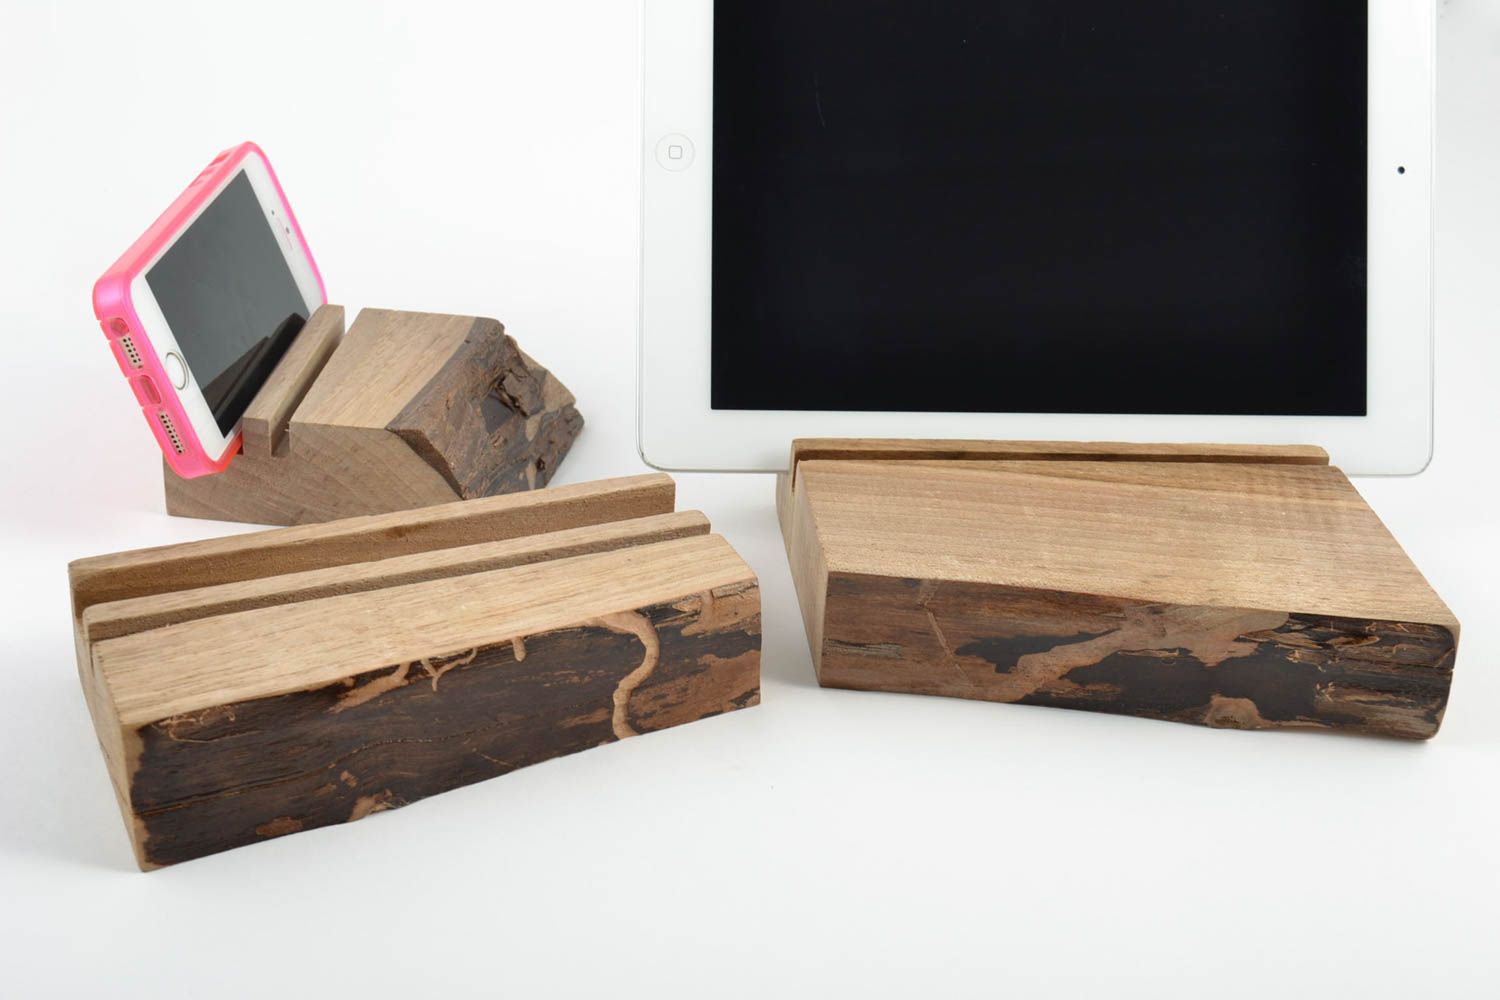 Porte-tablette et téléphone en bois vernis faits main écologiques 3 pièces photo 1